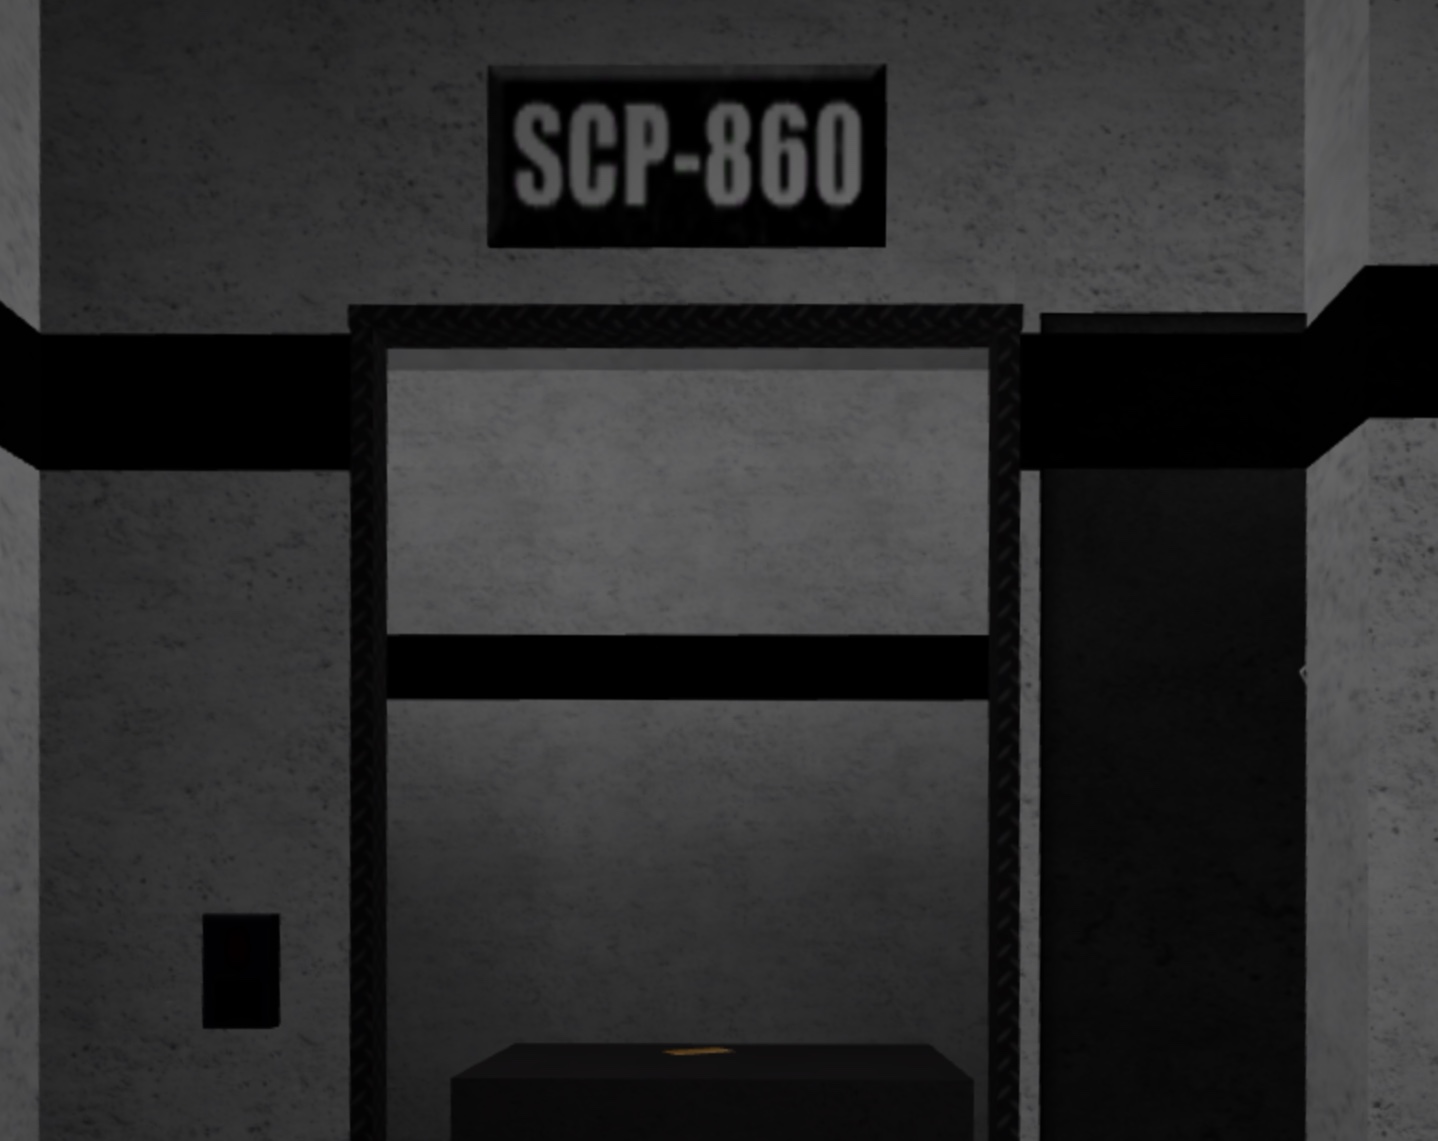 scp containment breach 860